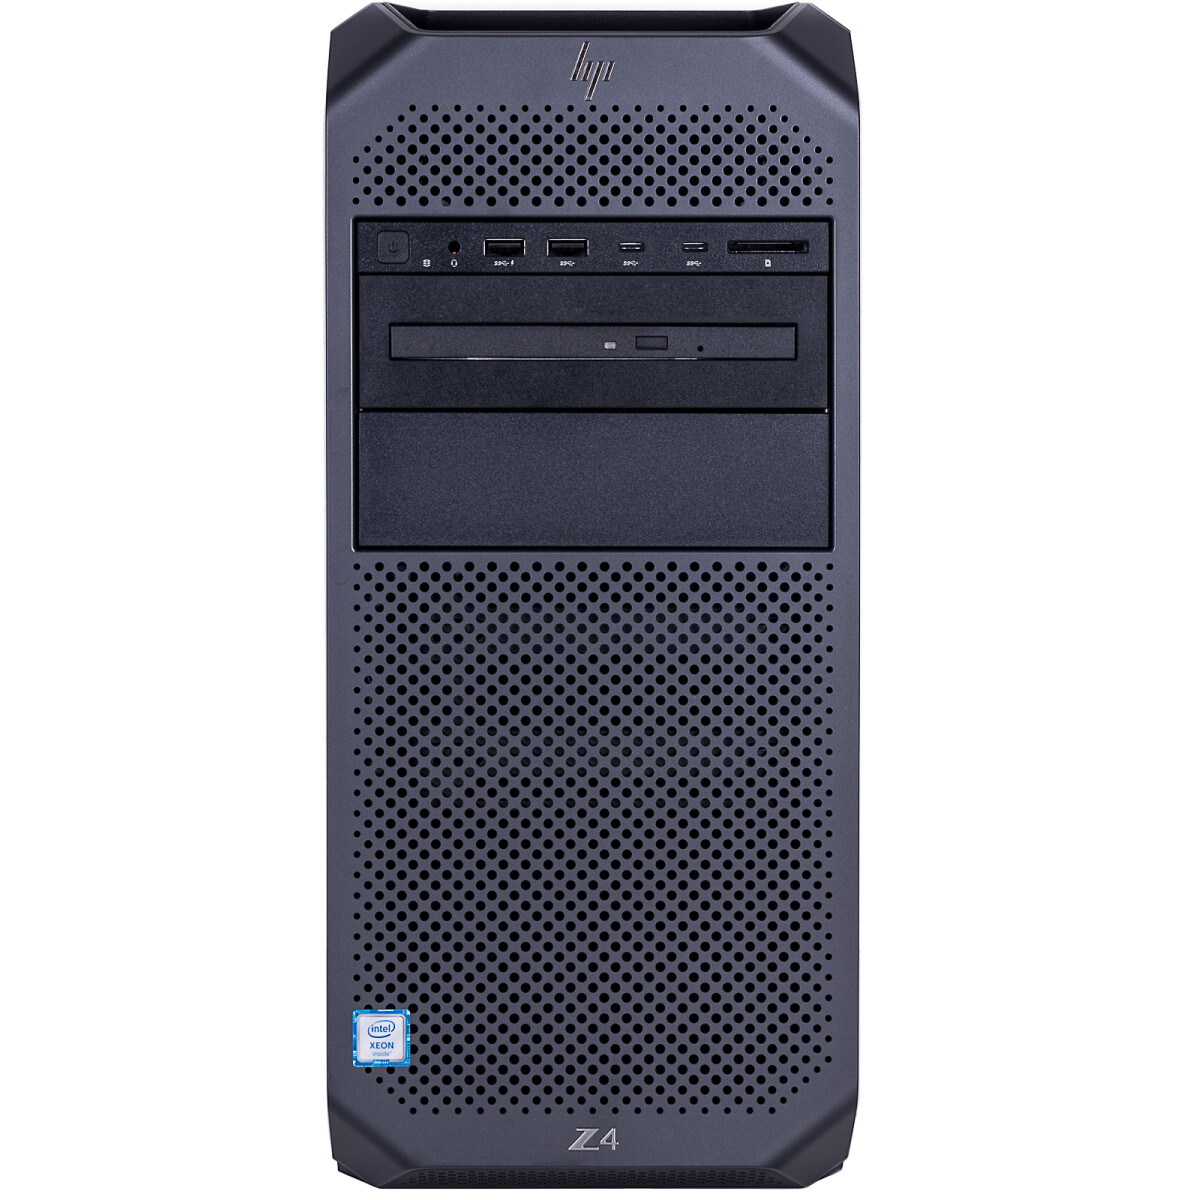 HP Z4 G4 Workstation XEON W-2145(8コア) メモリ64GB SSD256GB ワーク ...